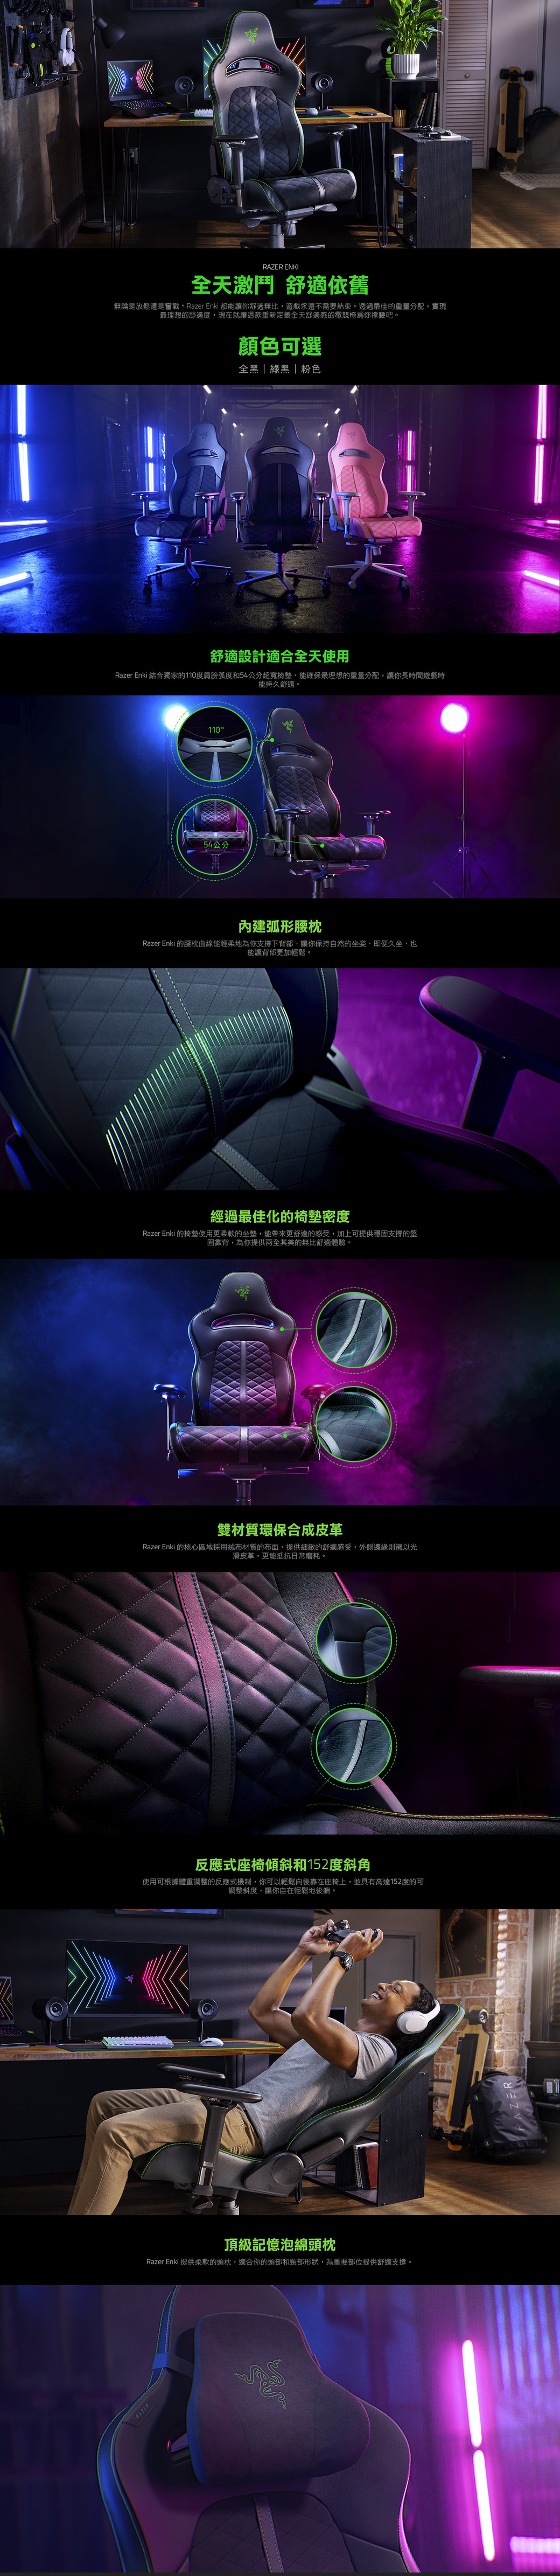 RAZERRAZER ENKI全天激鬥 舒適依舊無論是放鬆還是奮戰Razer Enki 都能讓你舒適無比,遊戲永遠不需要結束。透過最佳的重量分配,實現最理想的舒適度,現在就讓這款重新定義全天舒適感的電競椅你撑腰吧。顏色可選全黑 綠黑 粉色舒適設計適合全天使用Razer Enki 結合獨家的110度肩膀弧度和54公分超寬椅墊,能確保最理想的重量分配,讓你長時間遊戲時能持久舒適。11054公分內建弧形腰枕Razer Enki 的腰枕曲線能輕柔地為你支撐下背部,讓你保持自然的坐姿,即便久坐,也能讓背部更加輕鬆。經過最佳化的椅墊密度Razer Enki 的椅墊使用更柔軟的坐墊,能帶來更舒適的感受,加上可提供穩固支撐的堅固靠背,為你提供兩全其美的無比舒適體驗。雙材質環保合成皮革Razer Enki 的核心區域採用絨布材質的布面,提供細緻的舒適感受,外側邊緣則襯以光滑皮革,更能抵抗日常磨耗。反應式座椅傾斜和152度斜角使用可根據體重調整的反應式機制,你可以輕鬆向後靠在座椅上,並具有高達152度的可調整斜度,讓你自在輕鬆地後躺。頂級記憶泡綿頭枕Razer Enki 提供柔軟的頭枕,適合你的頭部和頸部形狀,為重要部位提供舒適支撐。N